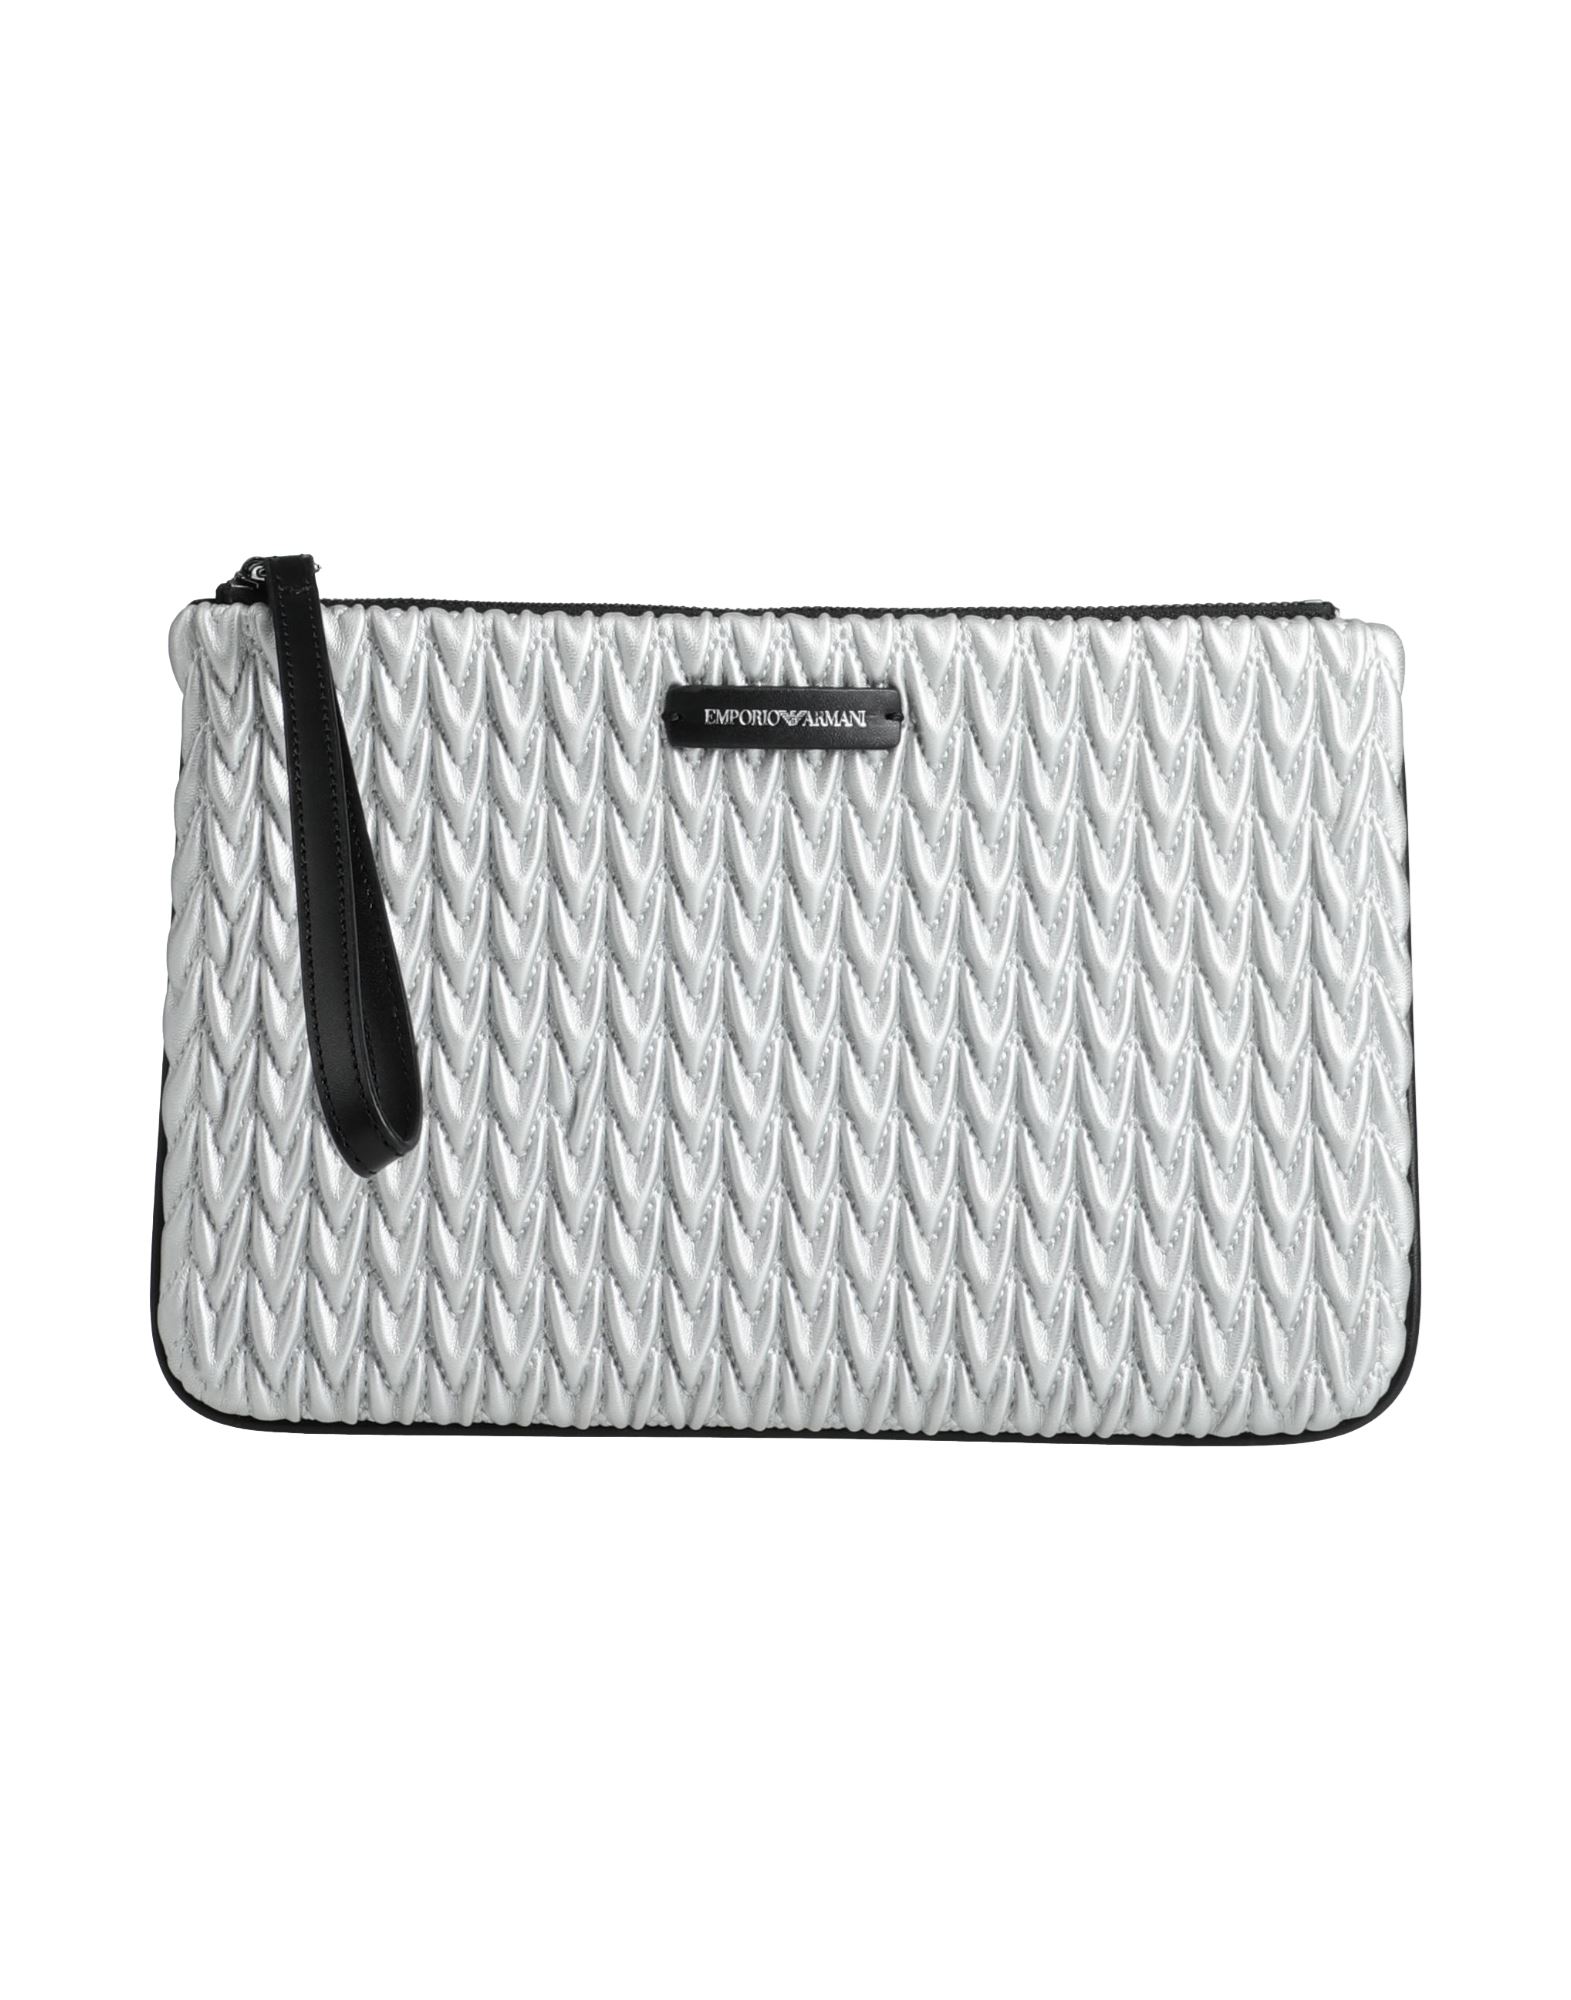 Emporio Armani Handbags In Silver